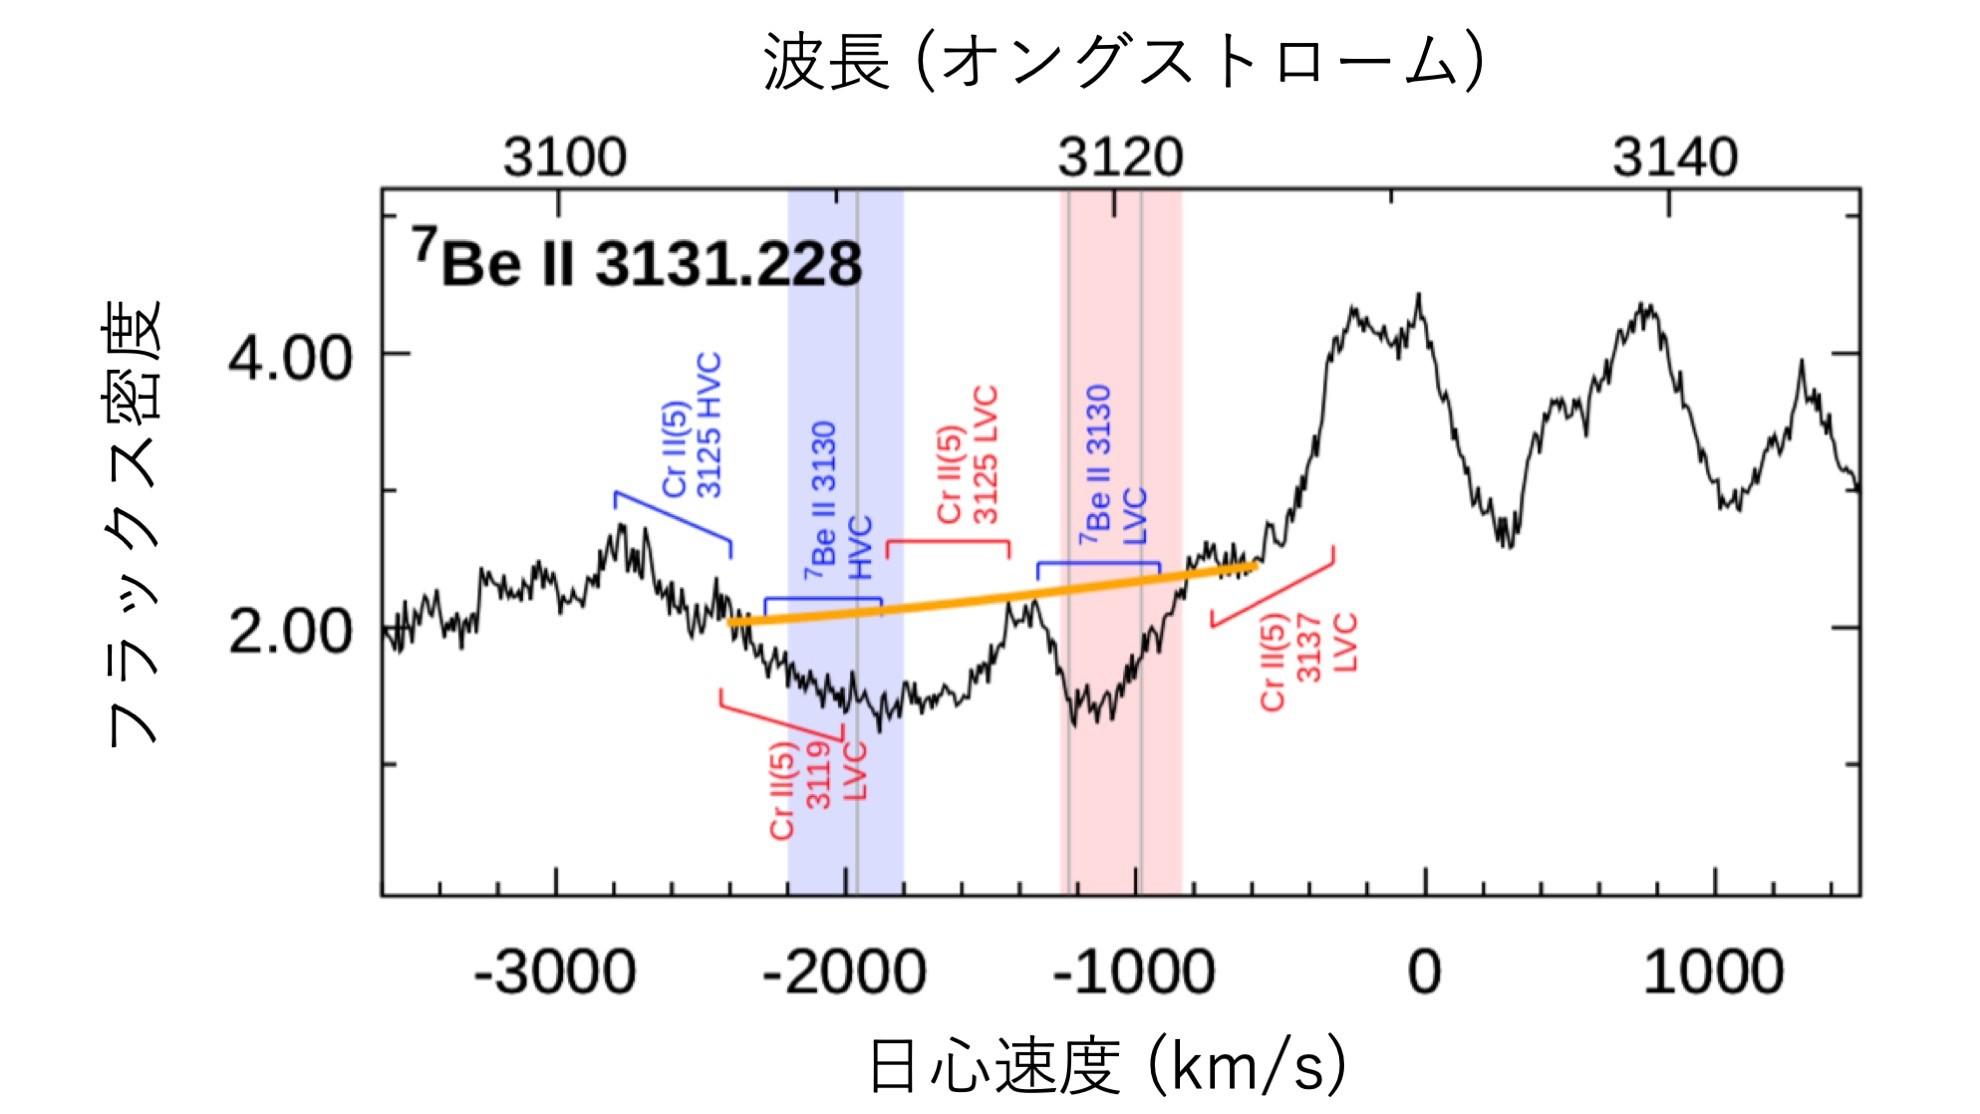 【京都産業大学】神山天文台は国立天文台との共同研究により、新星爆発によるリチウム生成量の多様性の解明に成功 -- 米国天体物理学誌『The Astrophysical Journal』に掲載決定